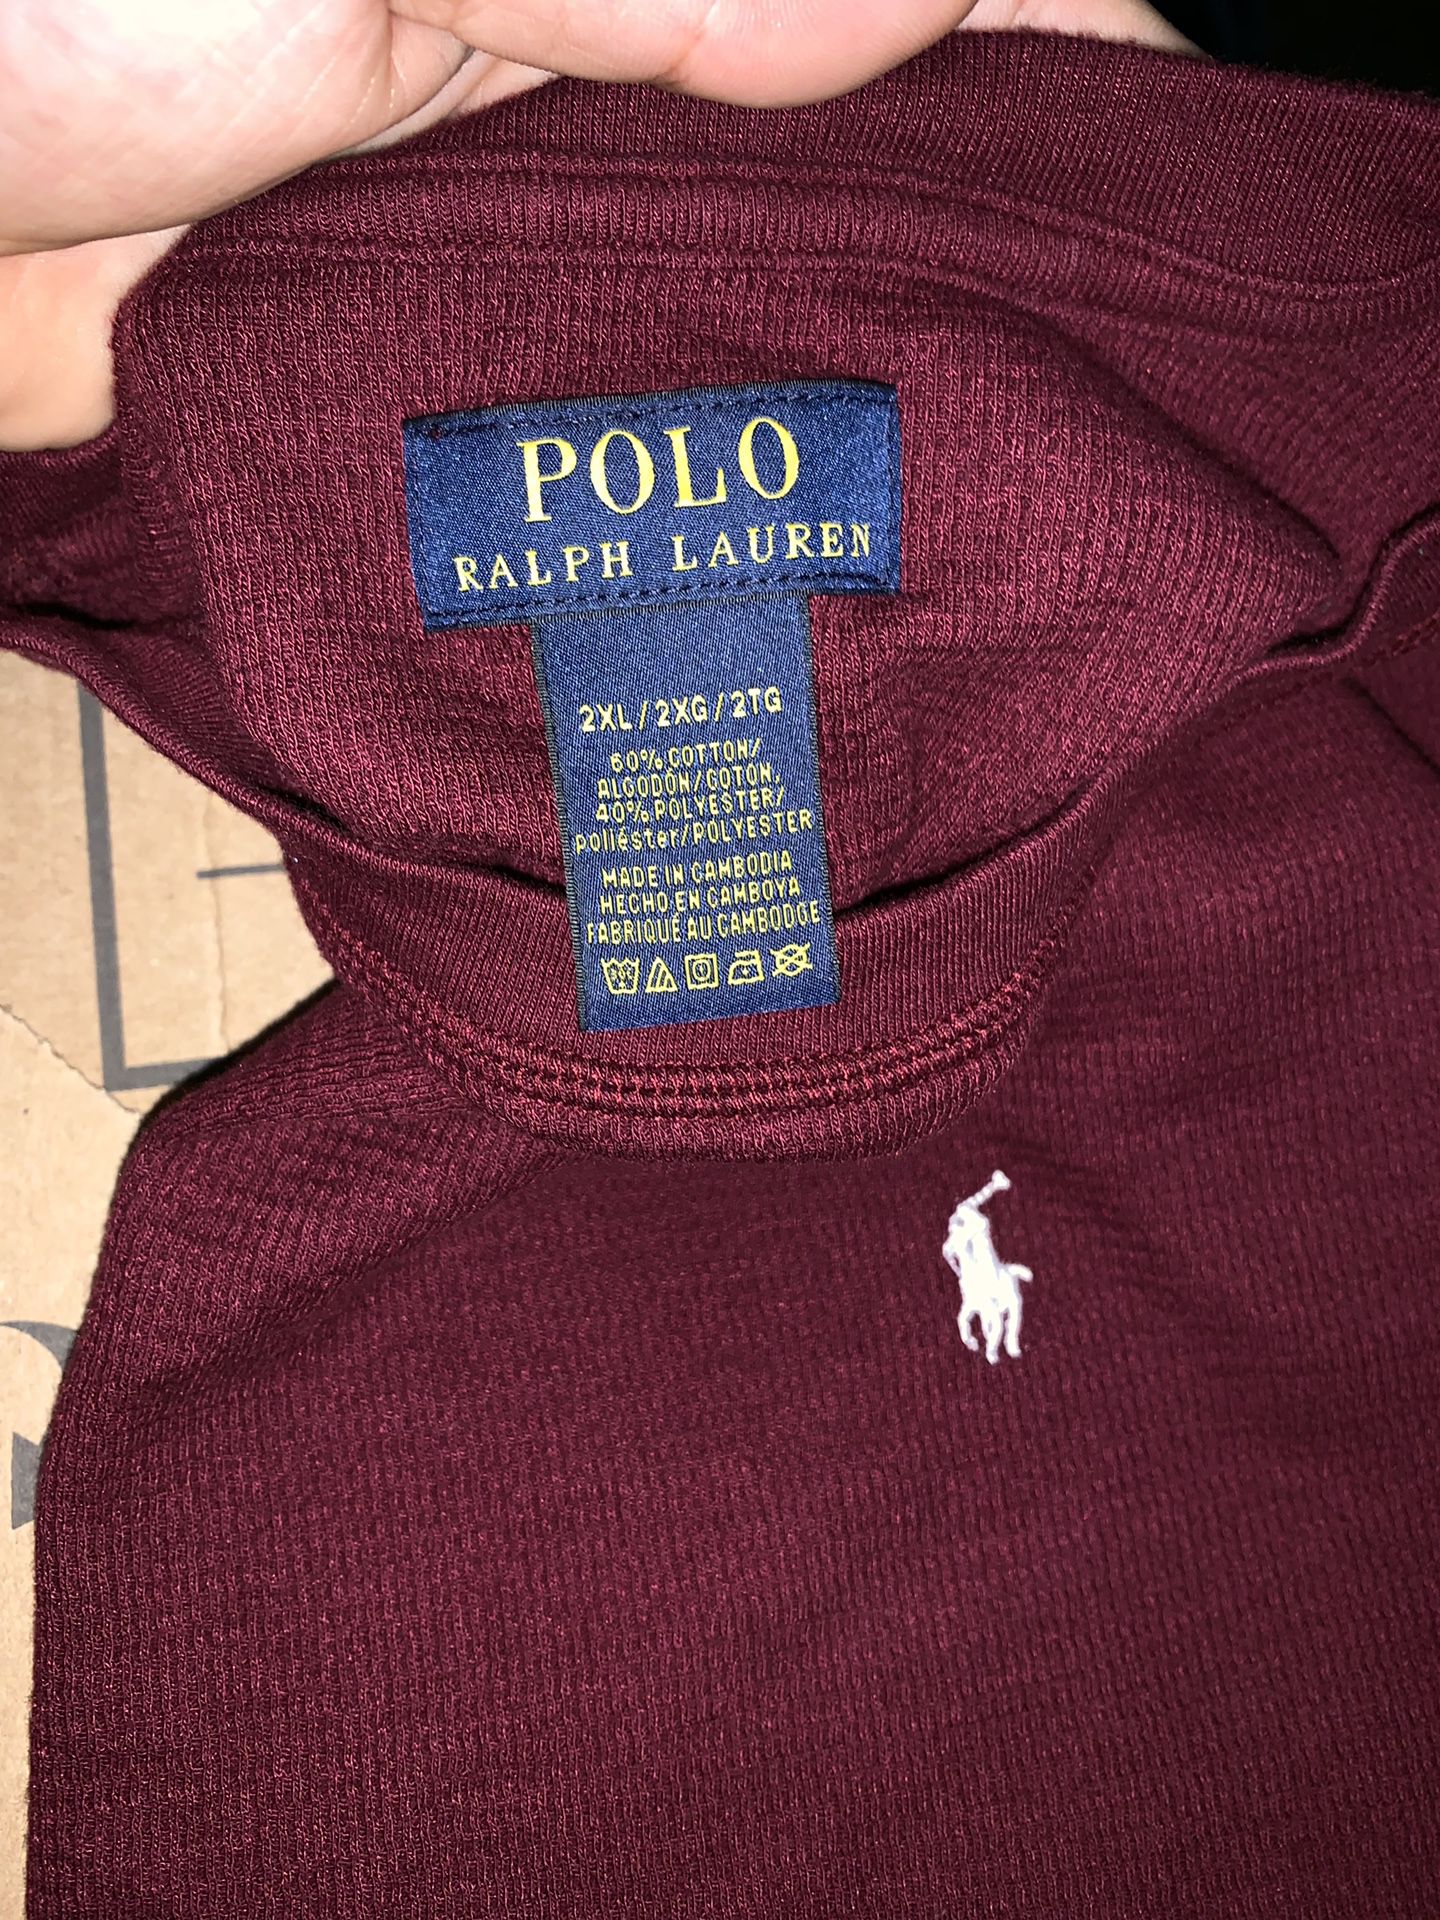 Long sleeve Polo shirt